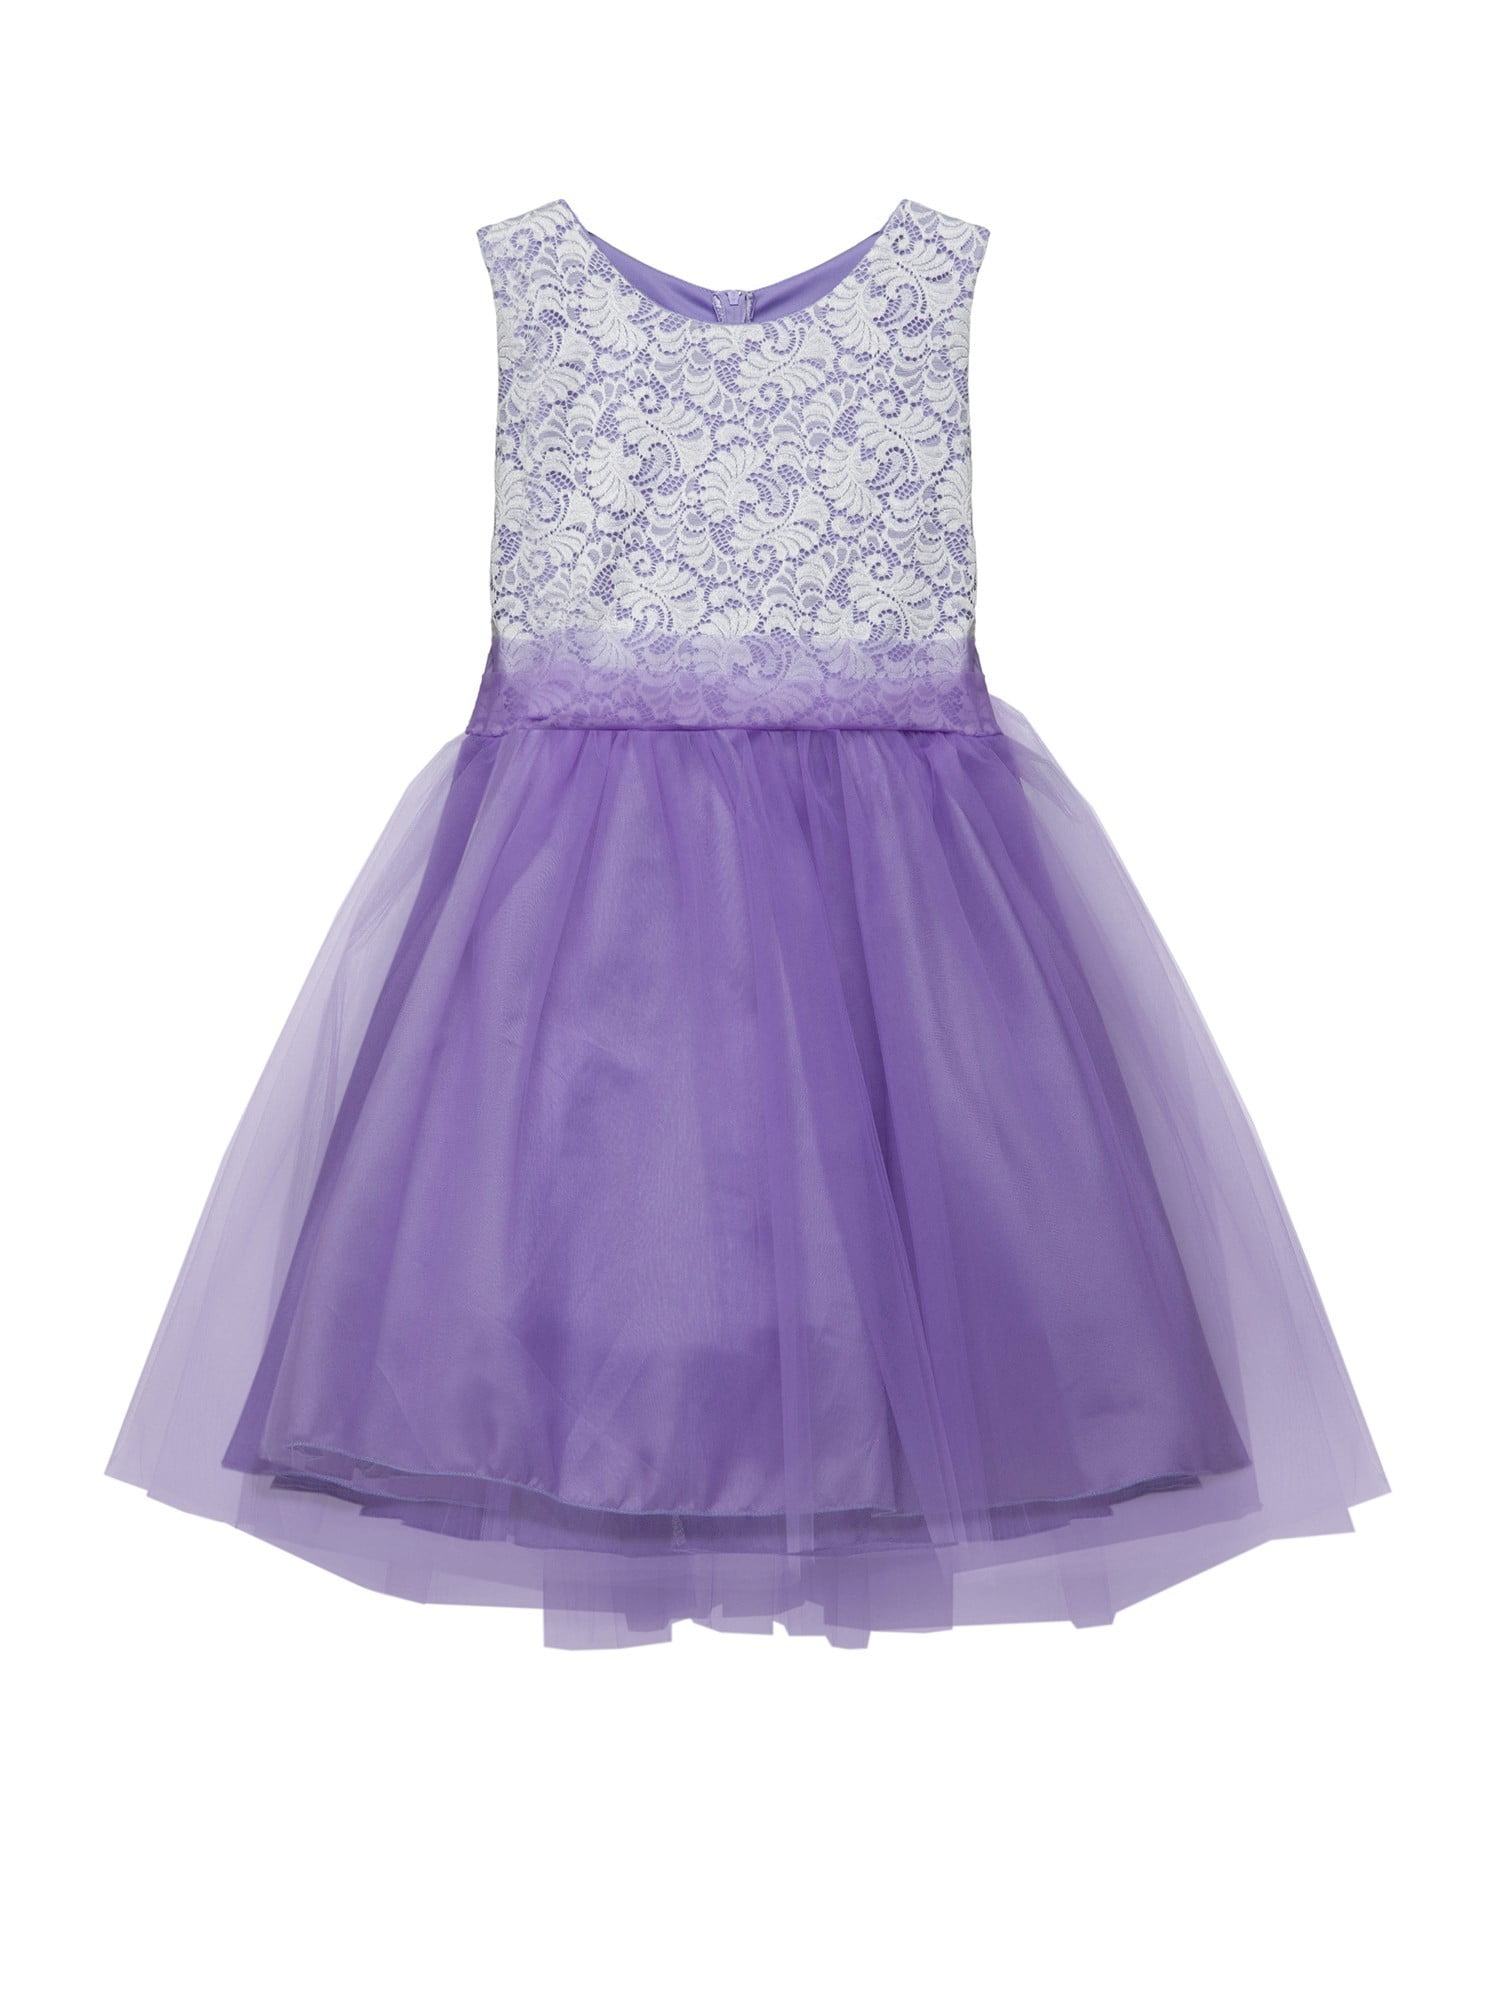 plus size lavender bridesmaid dresses